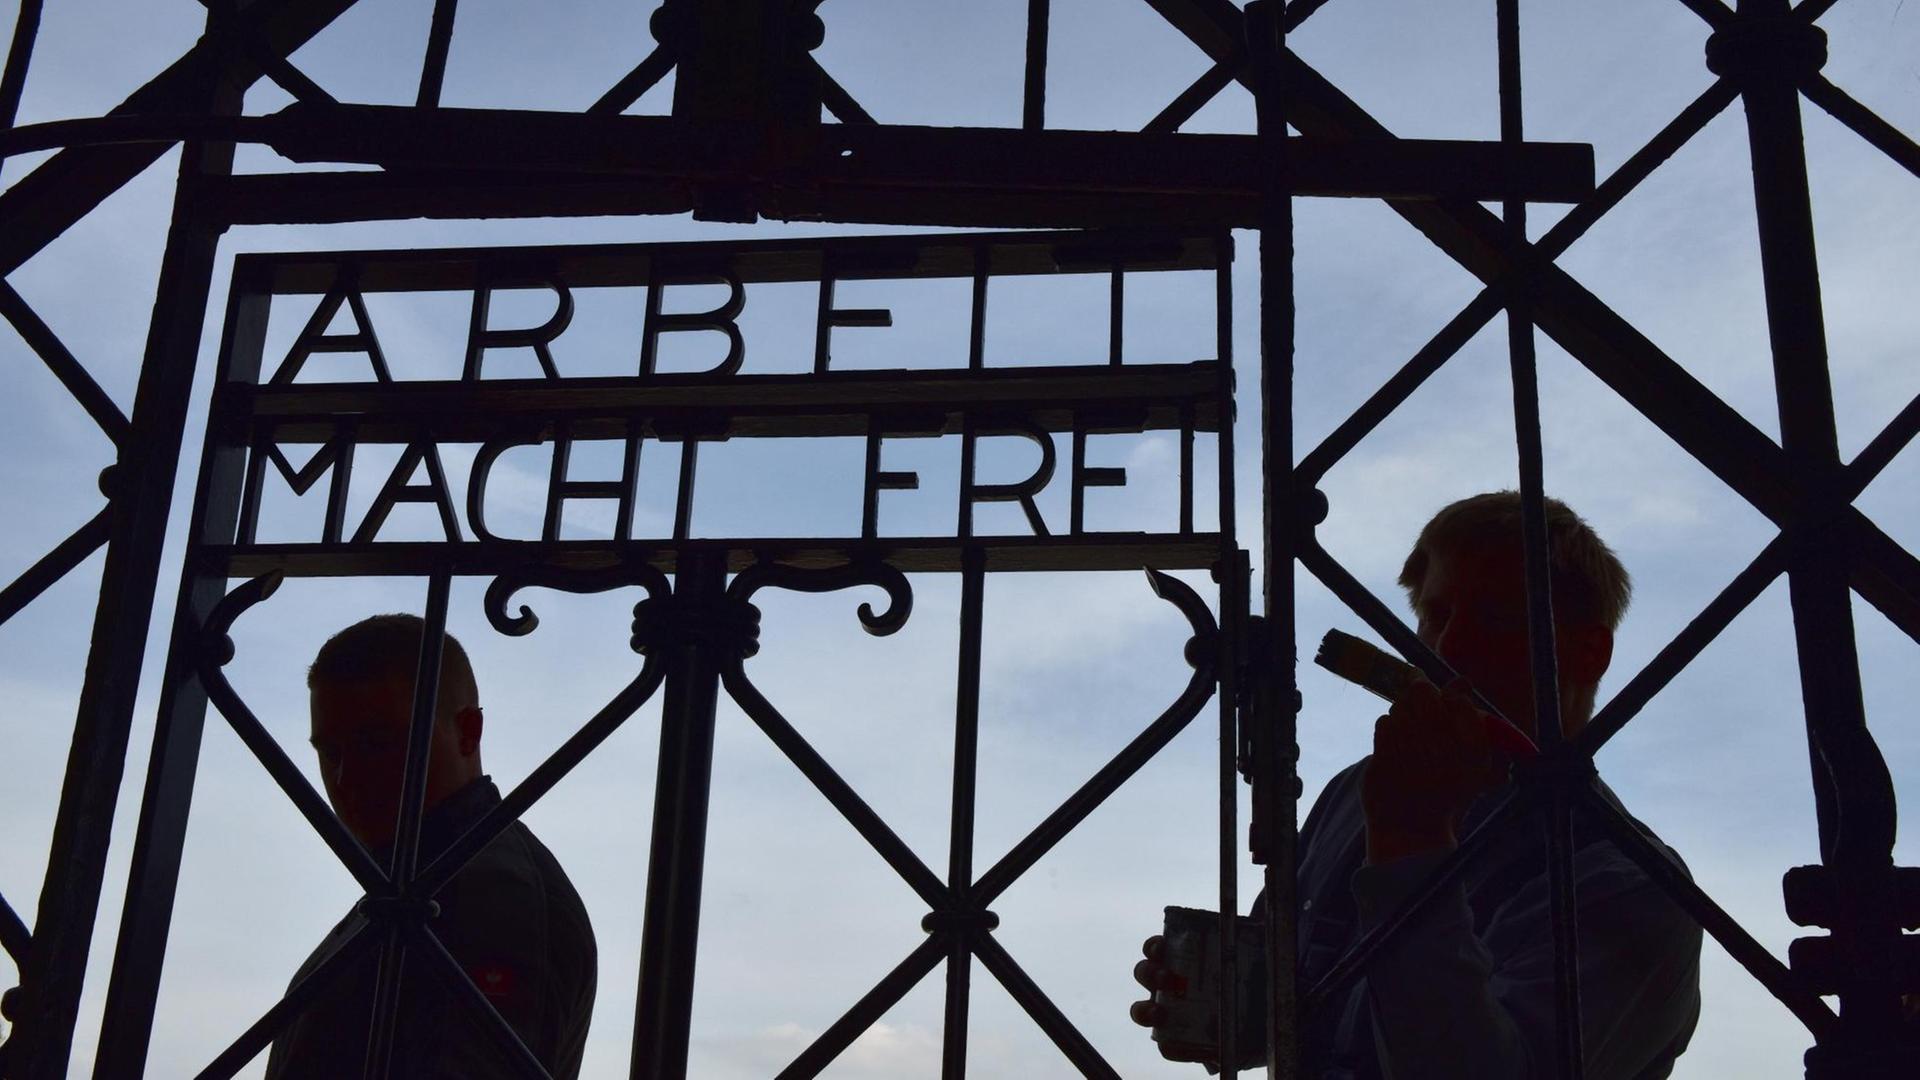 Das rekonstruierte Metalltor mit der Aufschrift "Arbeit macht frei" in der KZ-Gedenkstätte Dachau in Dachau bei München (Bayern).